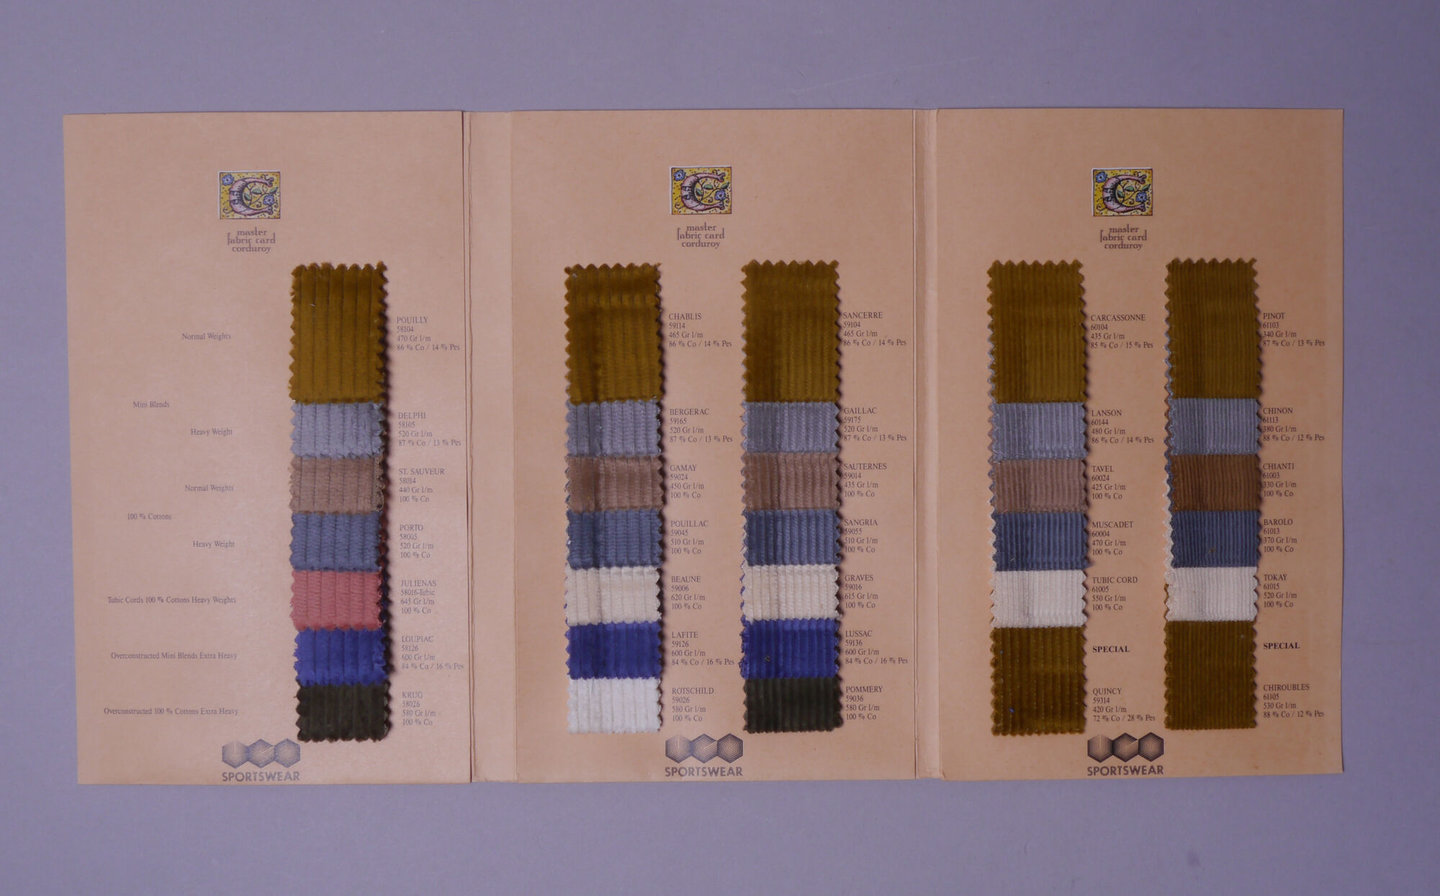 Staalboek met textielstalen van UCO